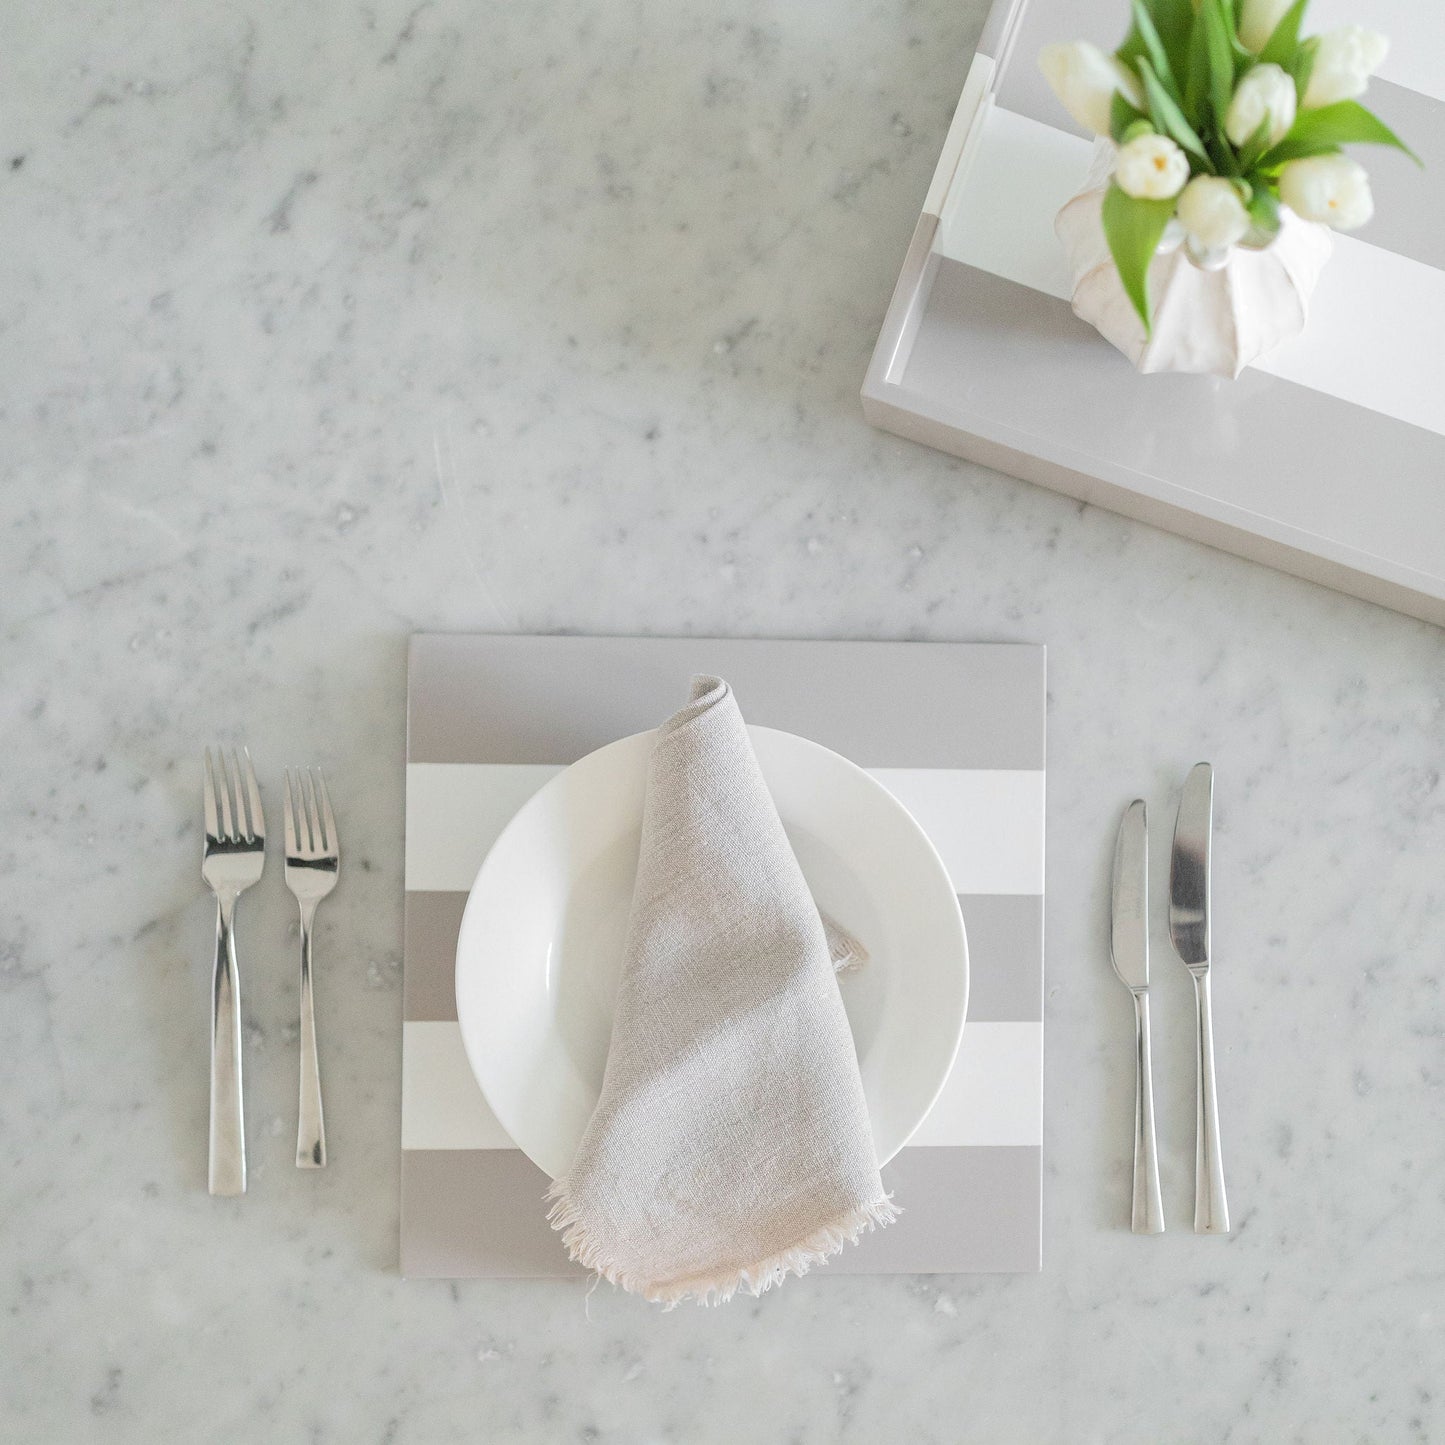 Tischsets aus Chiffon und weißem Lack – 4er-Set